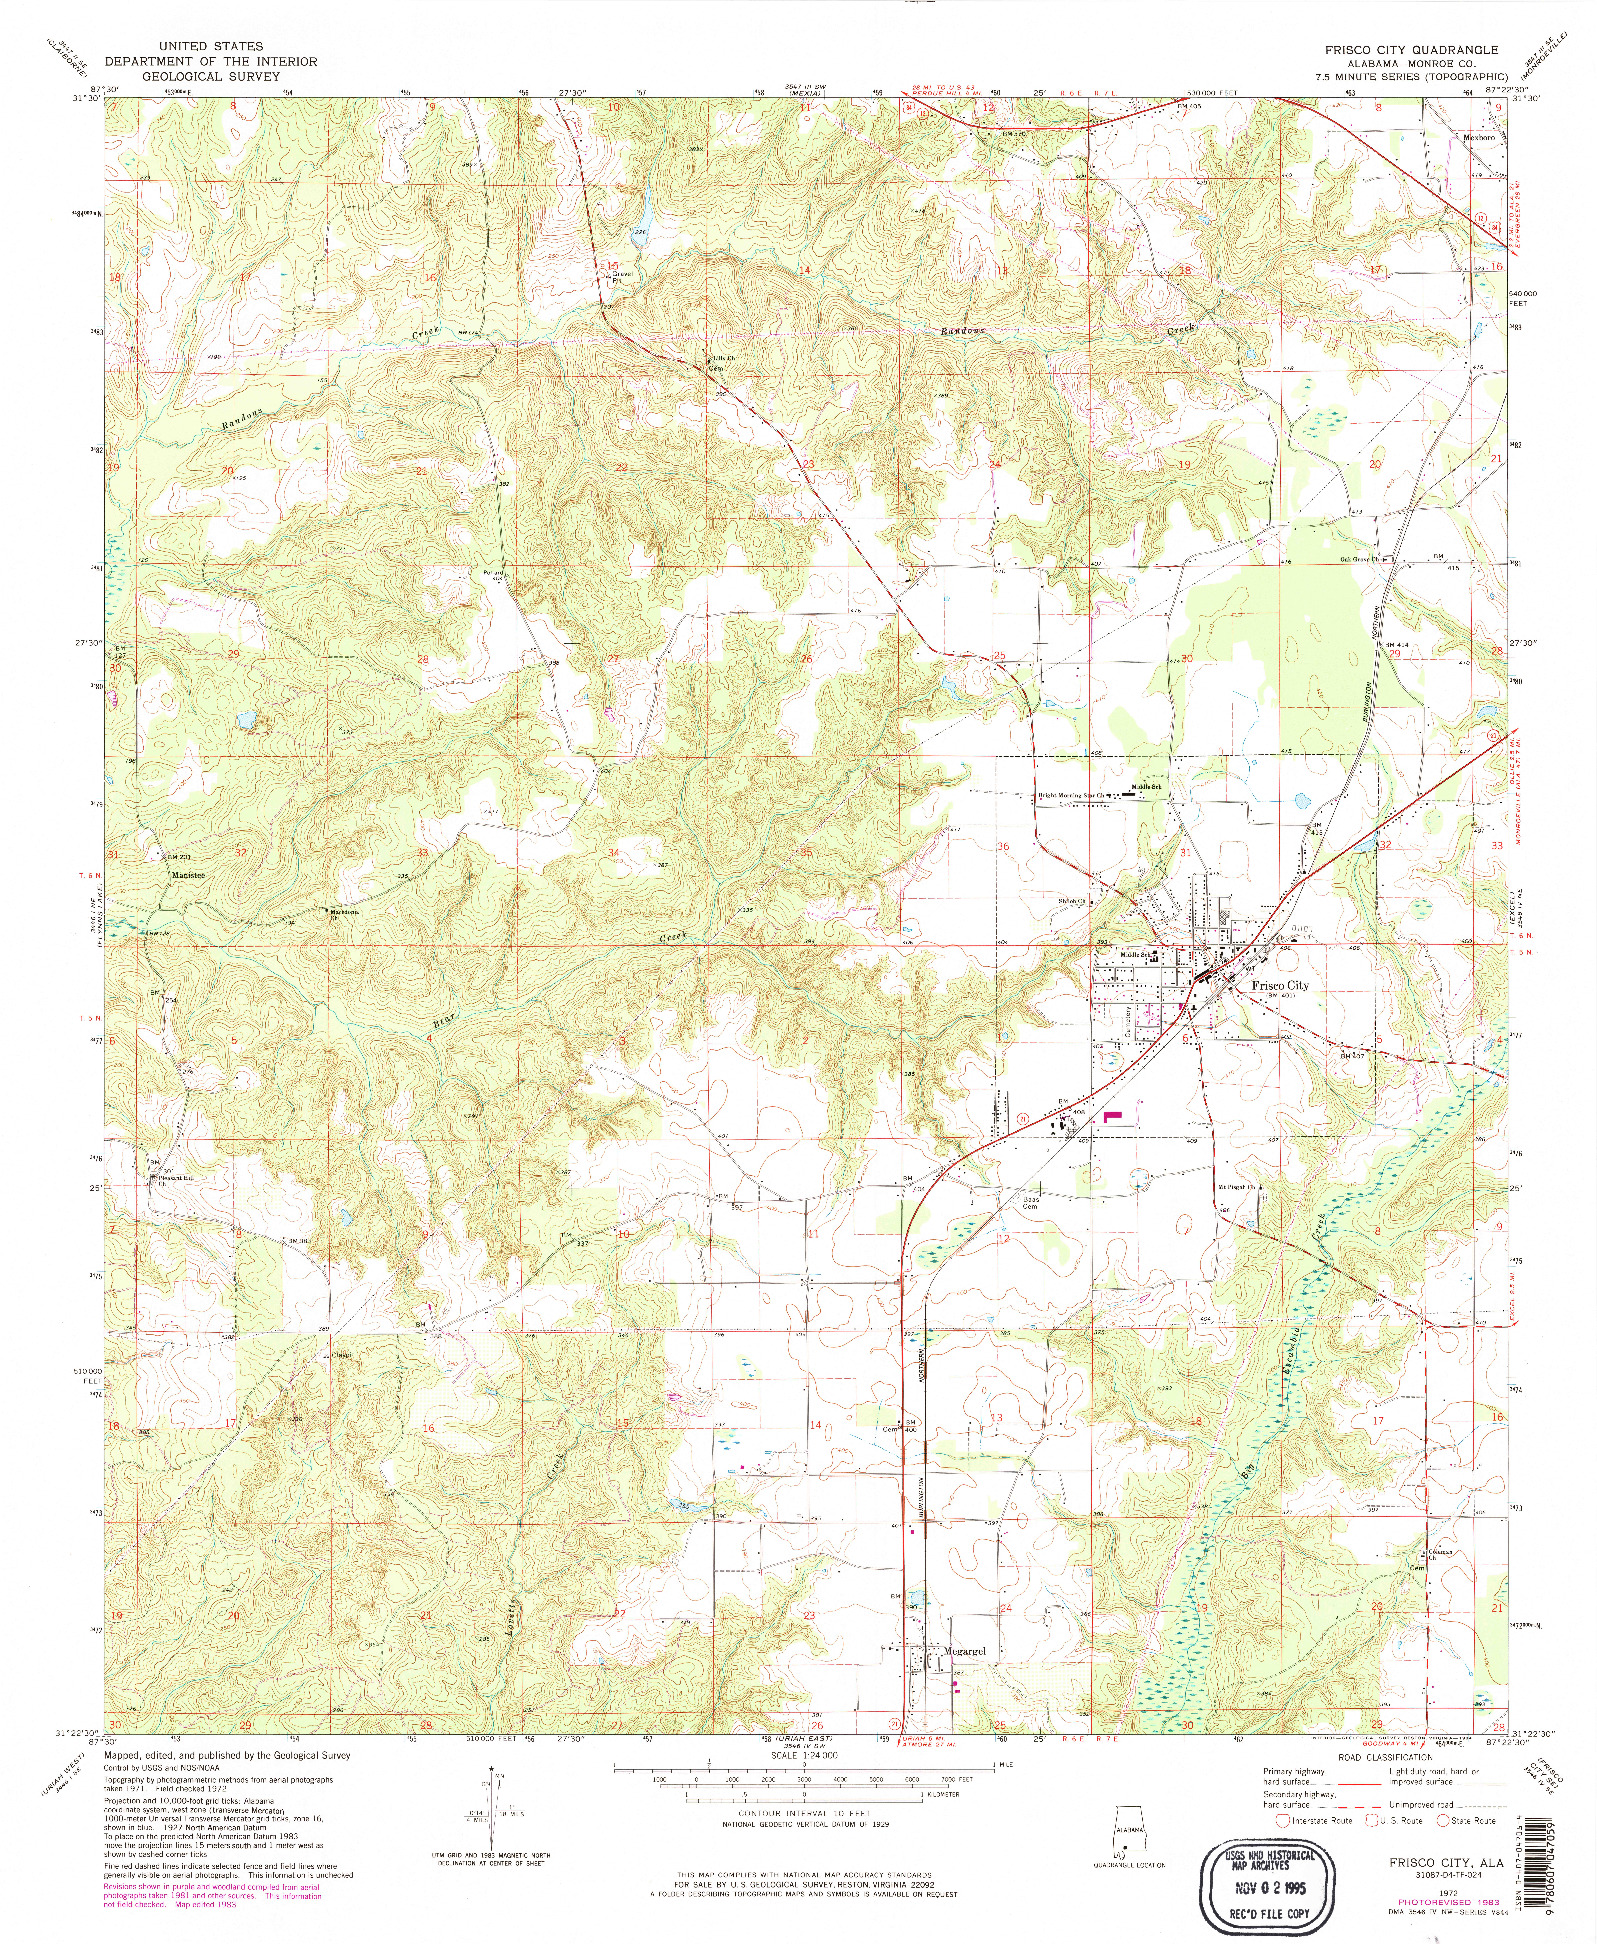 USGS 1:24000-SCALE QUADRANGLE FOR FRISCO CITY, AL 1972